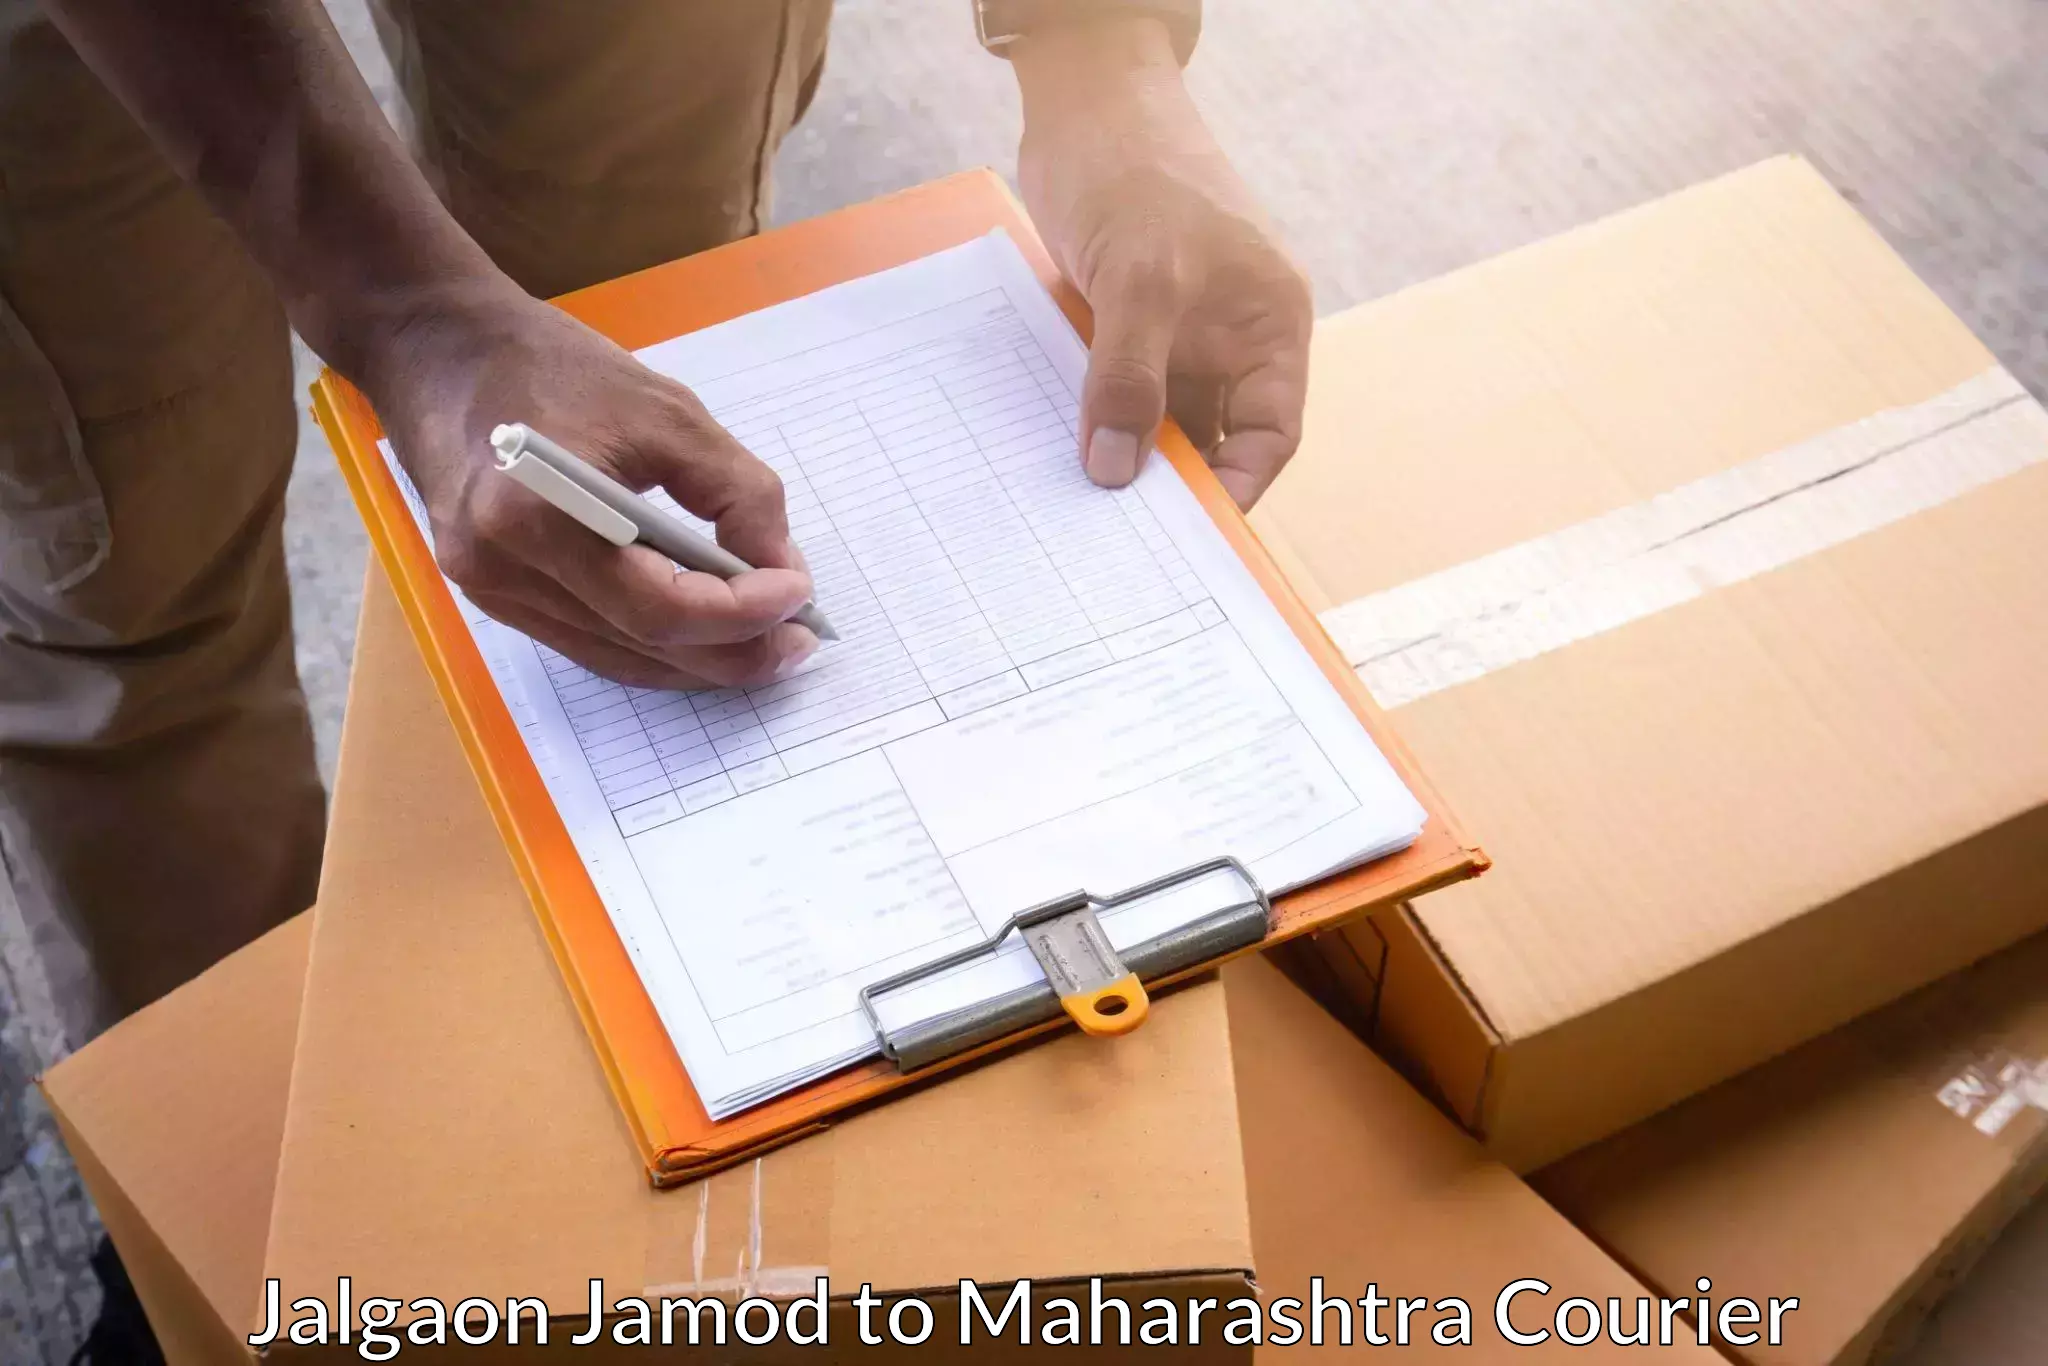 Pharmaceutical courier Jalgaon Jamod to Vadgaon